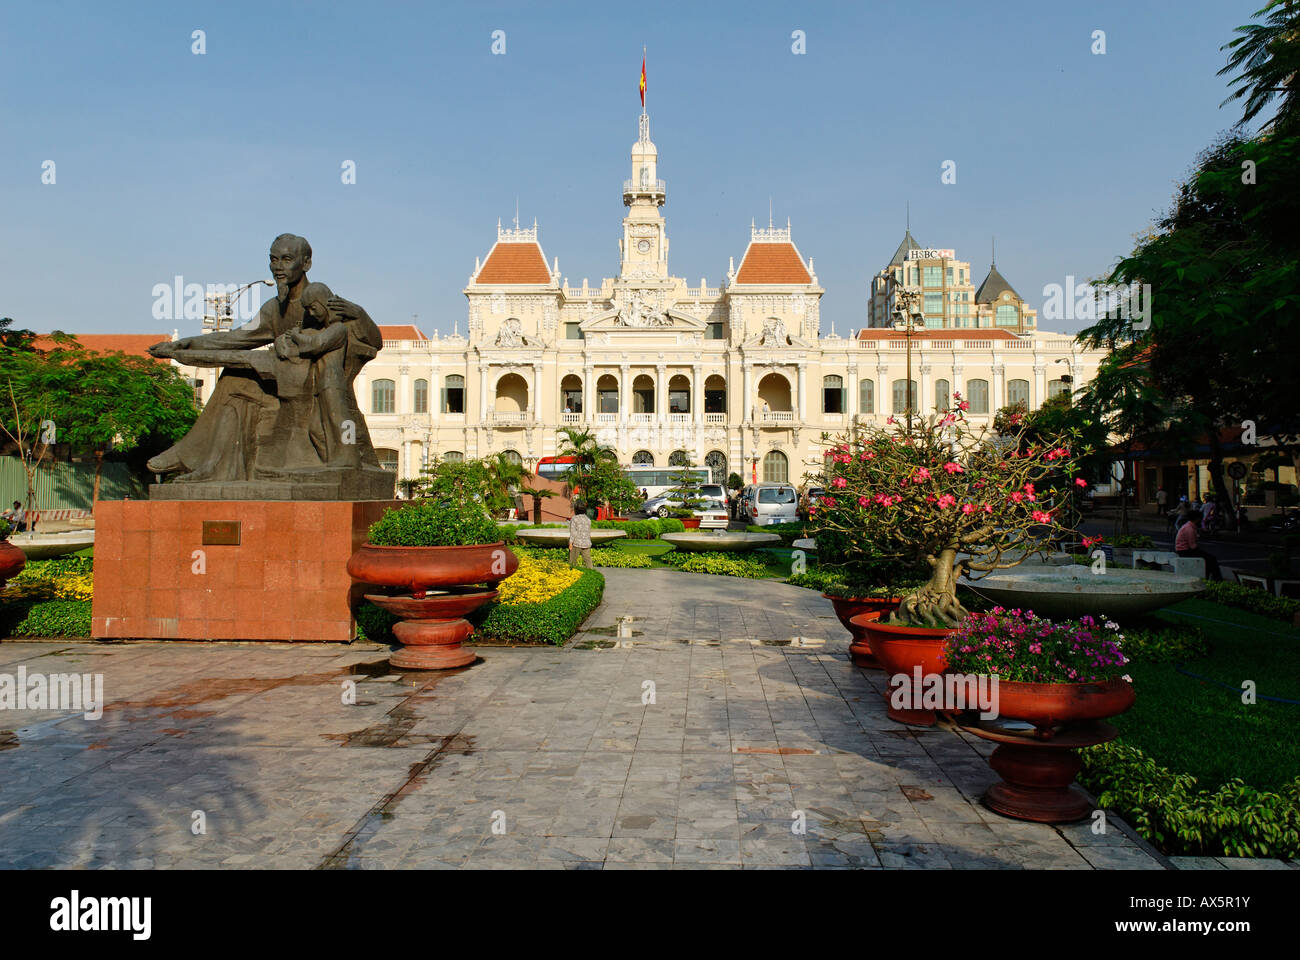 Historic city hall of Saigon, Ho Chi Minh City, Vietnam Stock Photo